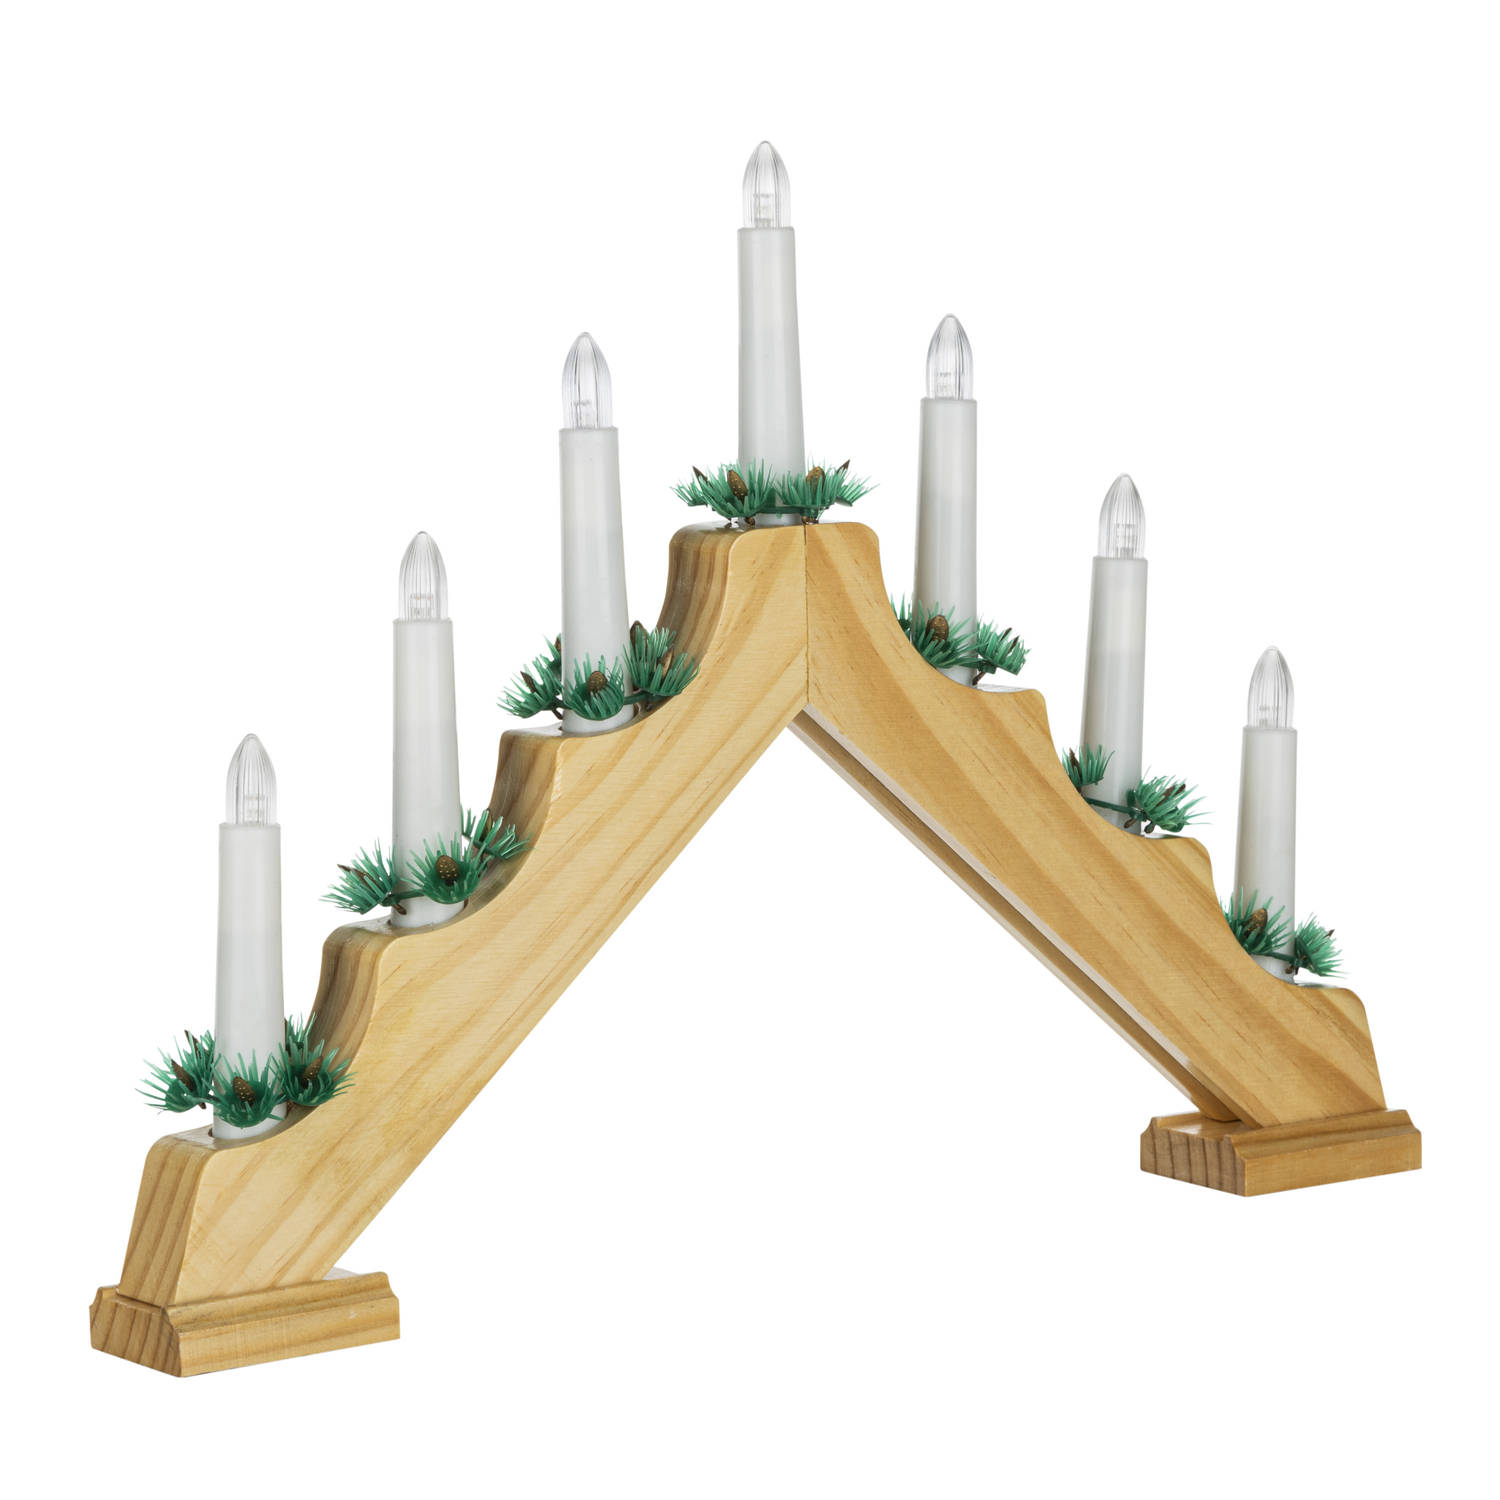 HI kaarsenbrug - 42,5 x 4,5 x 32 cm - hout - met LED kaarsen